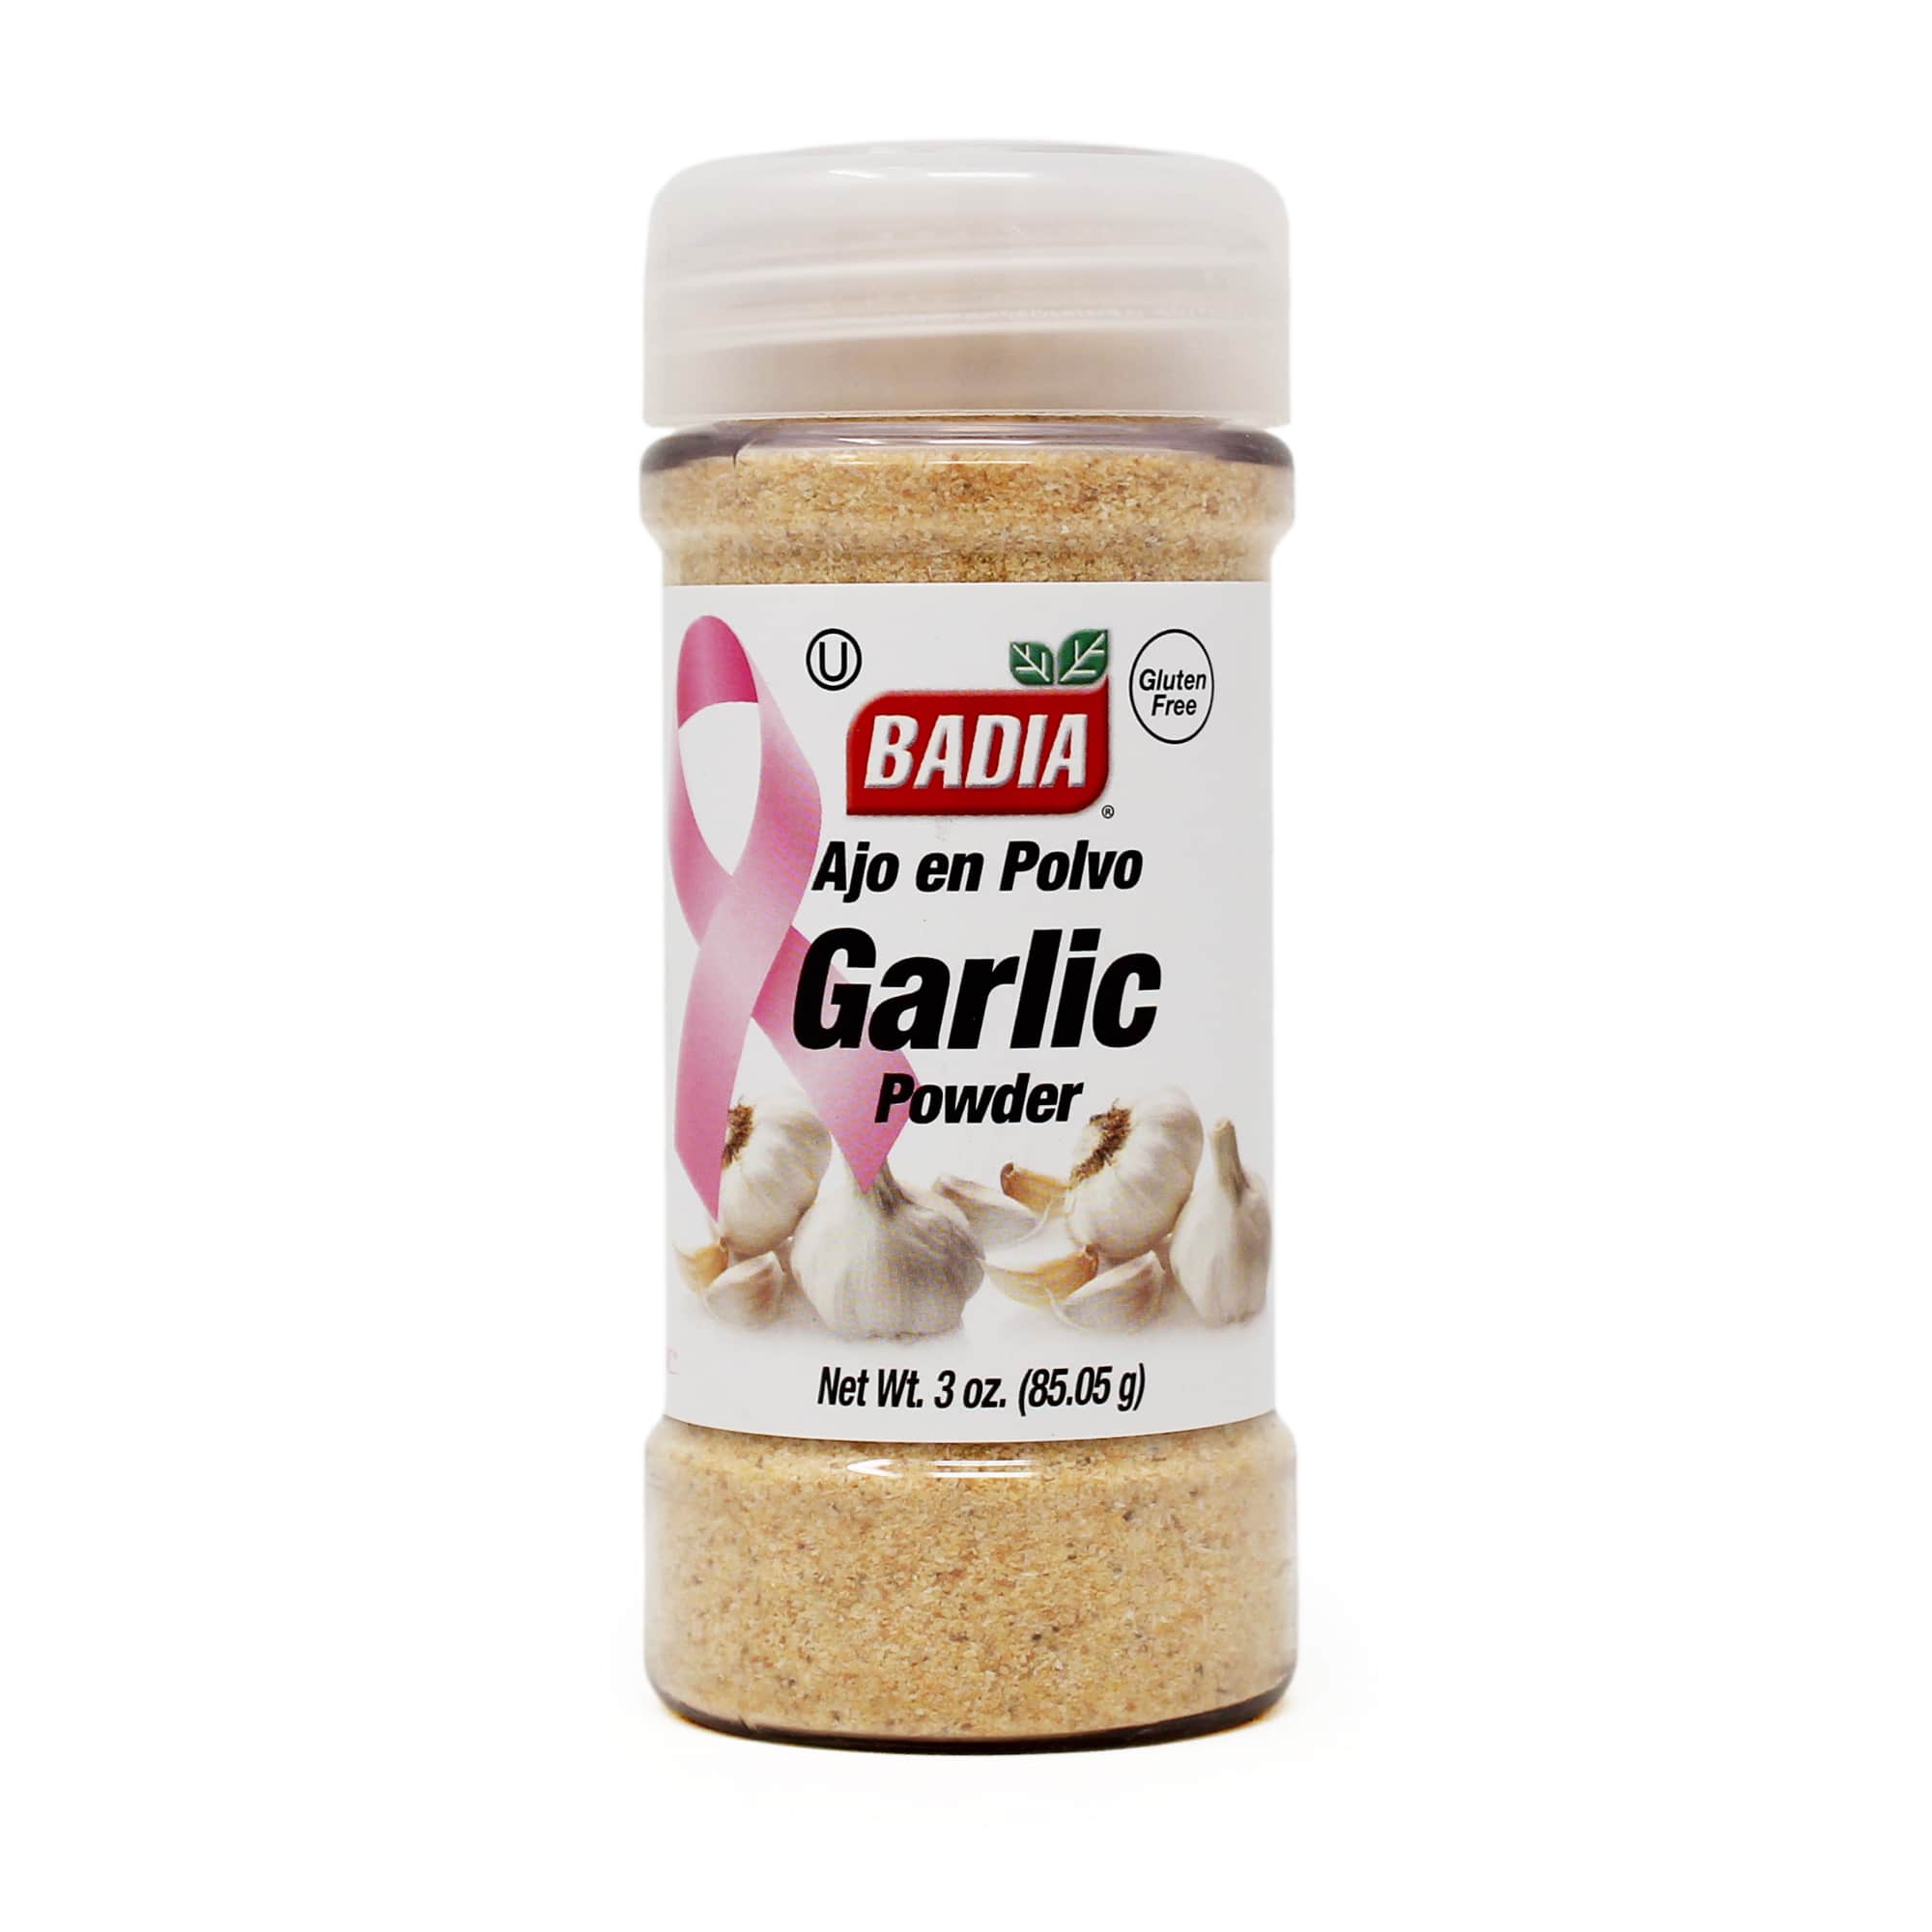 Badia Spices ground garlic 85.05g